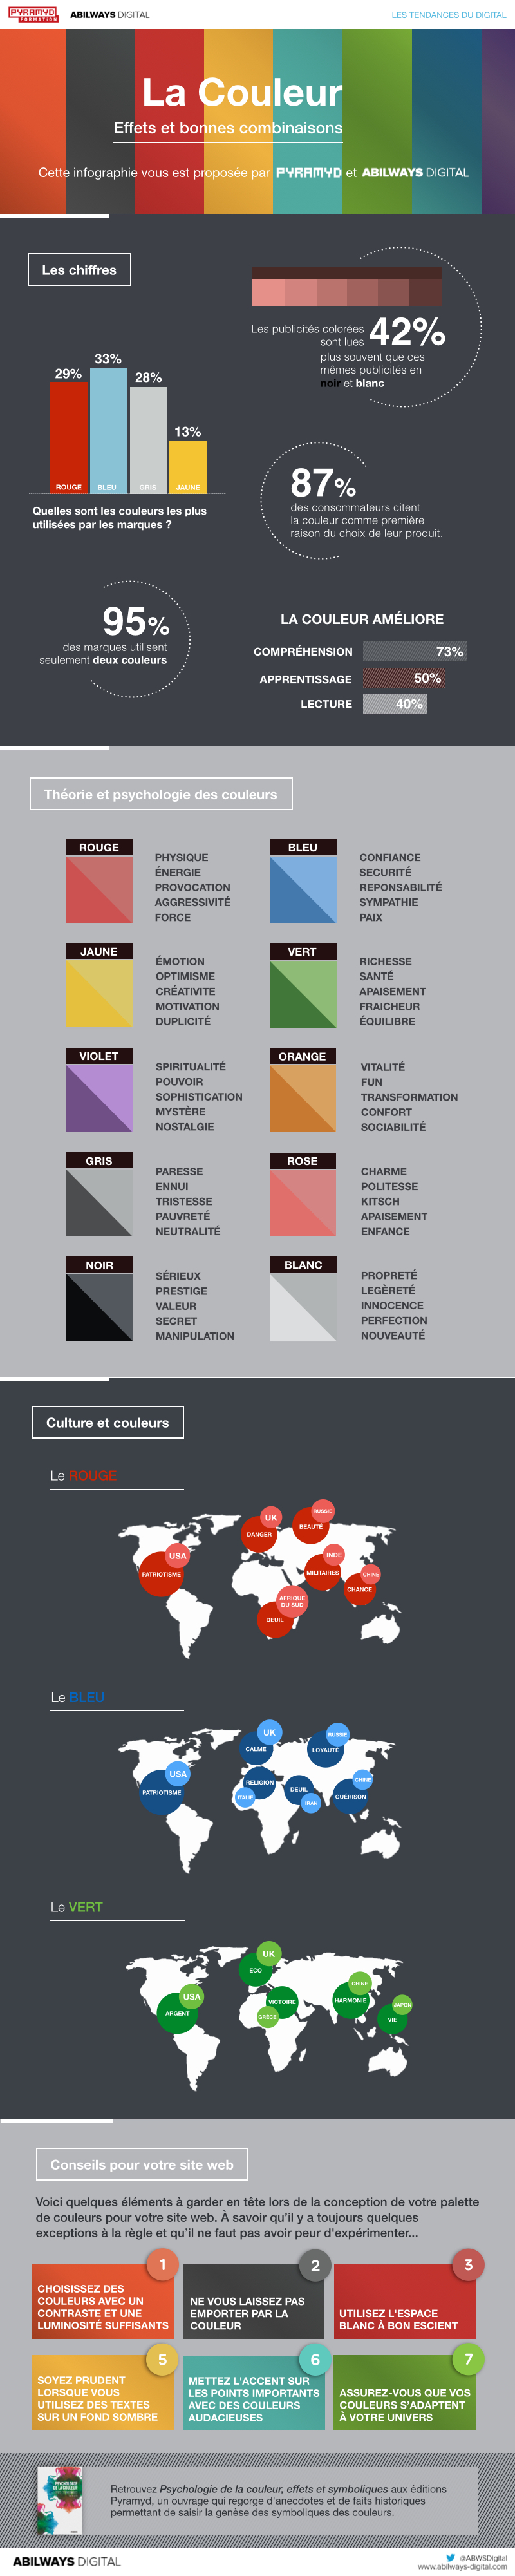 Infographie sur la couleur en marketing et webmarketing